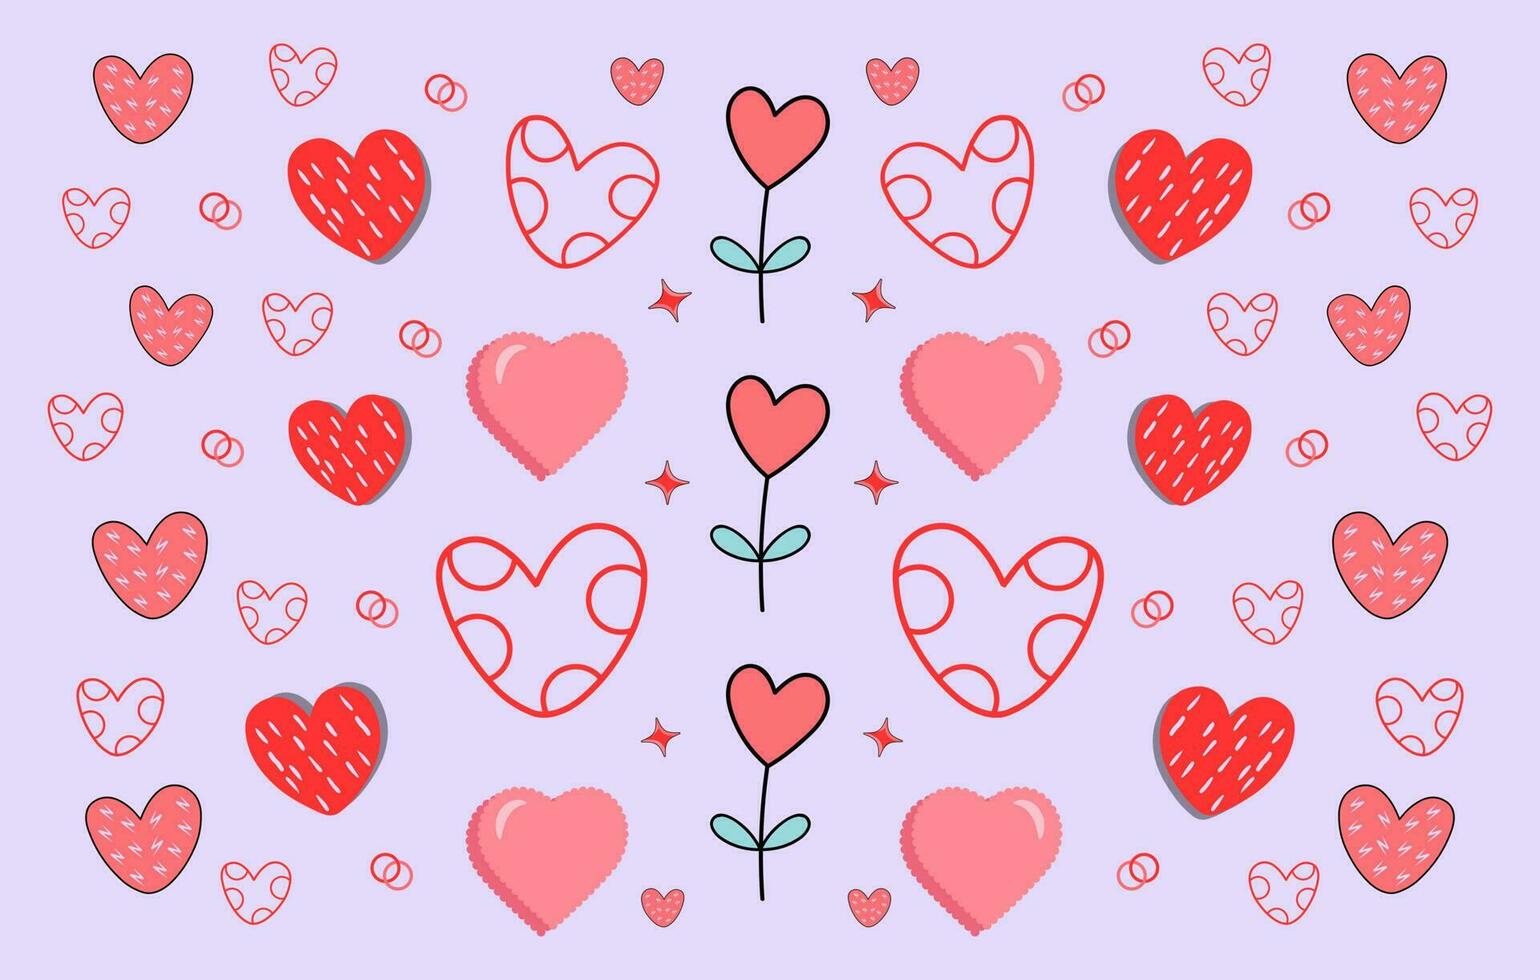 liefde vector bundel vrij, liefde illustratie set, decoratief liefde element, liefde hart clip art